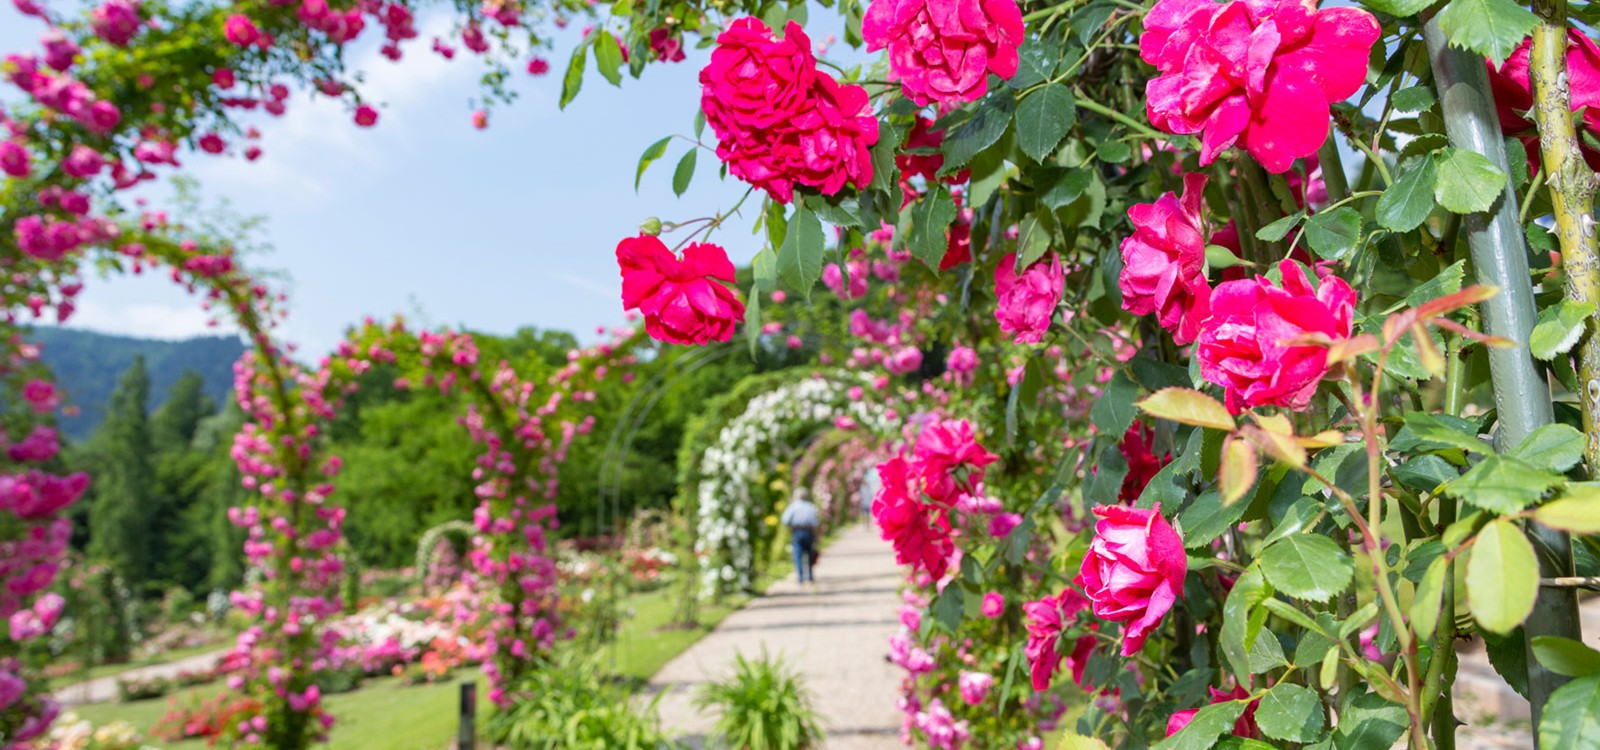 Ein schön angelegter Park mit vielen verschiedenen Rosen